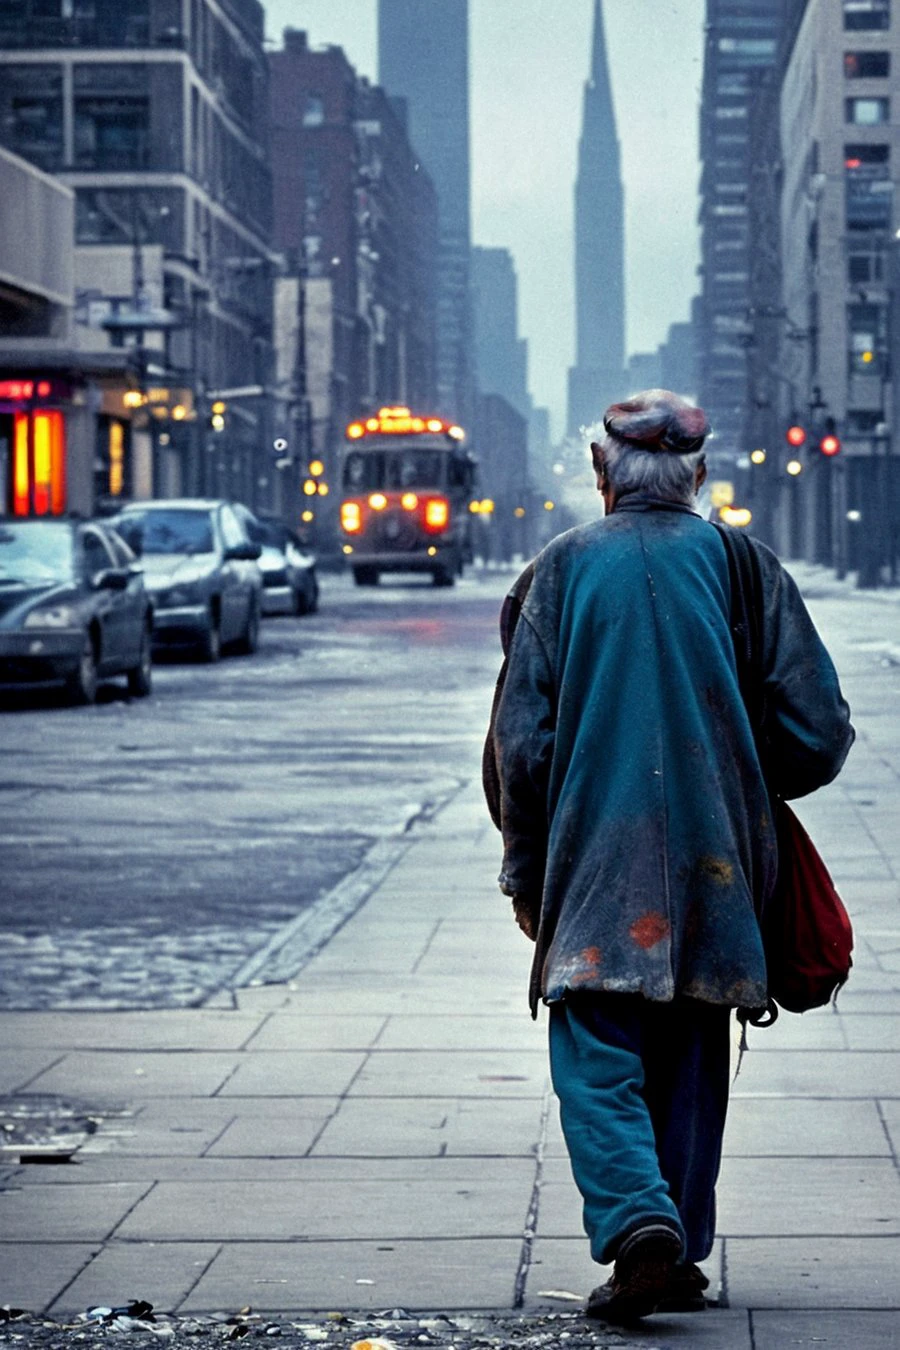 彩色高分辨率街景照片：一位无家可归的老人在繁忙的街道上悲伤地行走. 该男子背着一个破旧的背包，穿着一件破烂的大衣. 背景中的城市景观增添了失落感和孤独感.